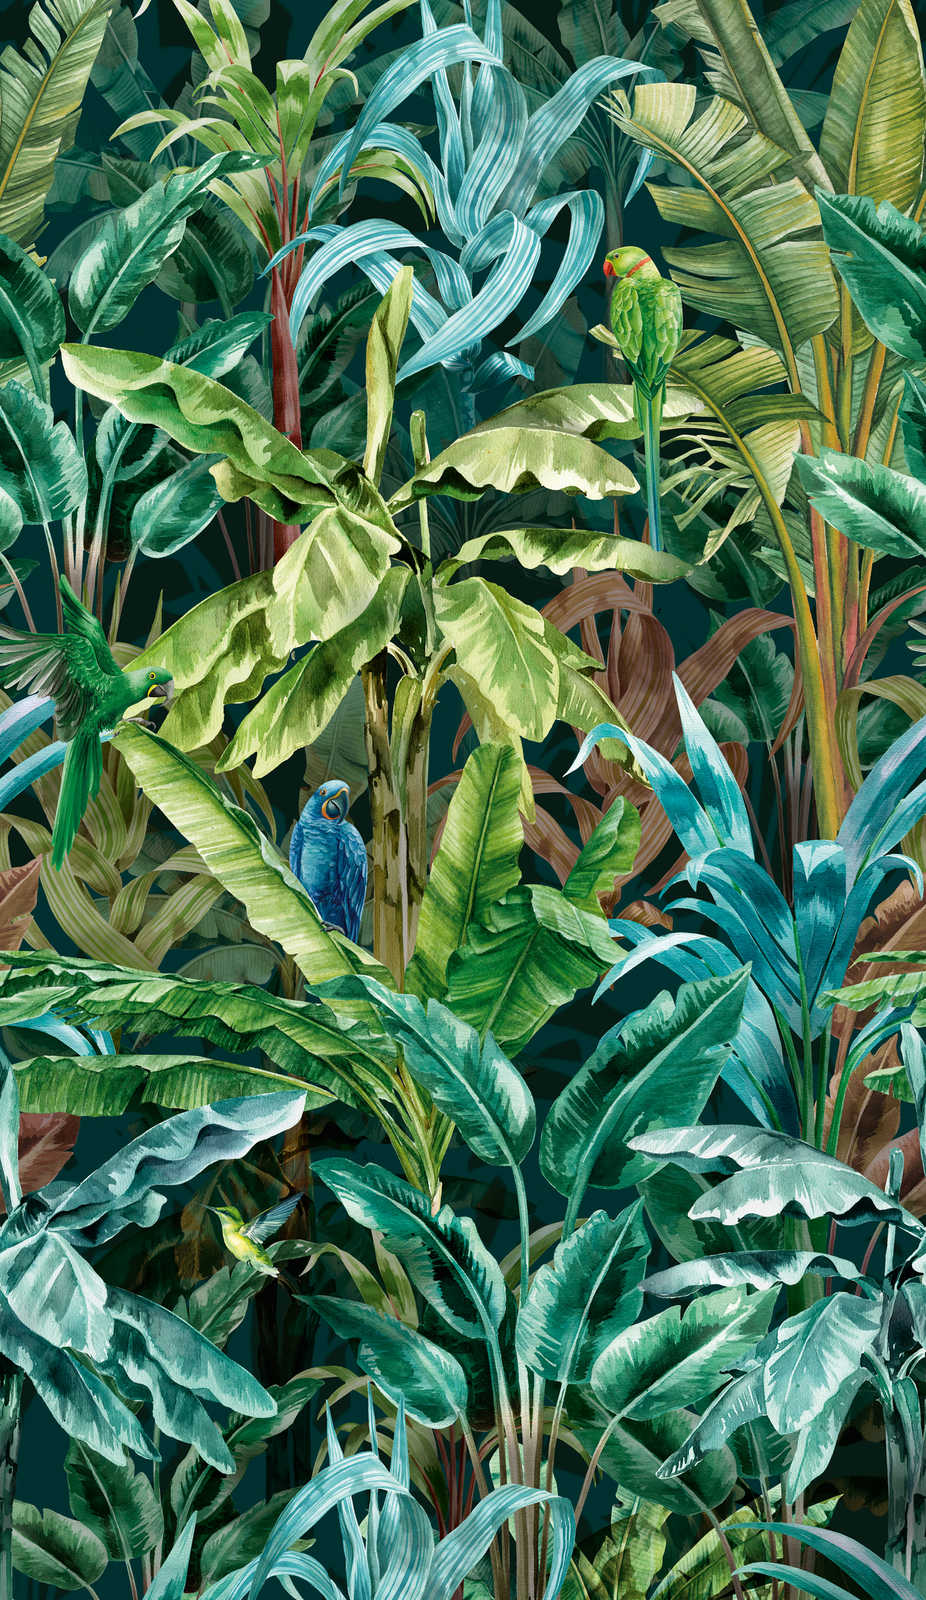             Vliesbehang met opzichtig junglepatroon - groen, blauw, bruin
        